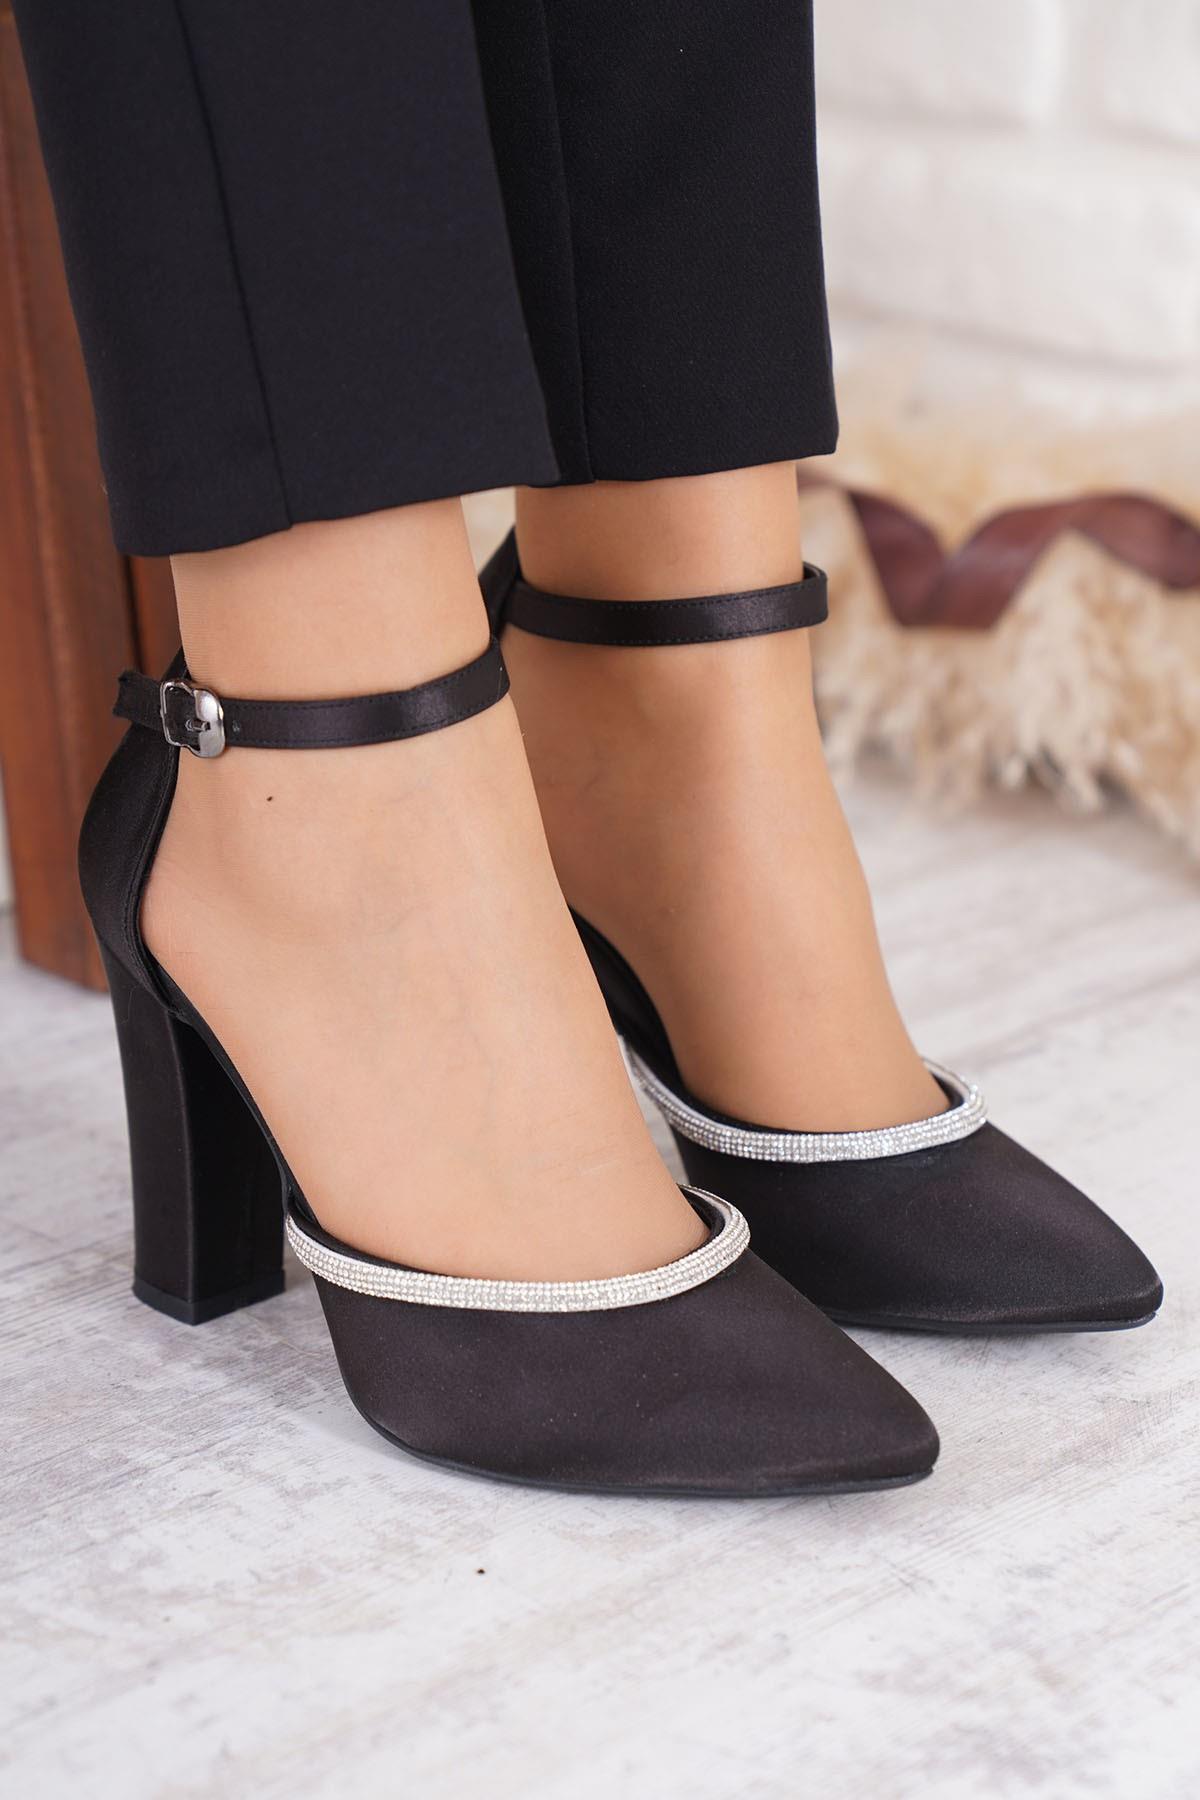 Miu Şerit Taş Karnıyarık Kadın Topuklu Ayakkabı Siyah Saten